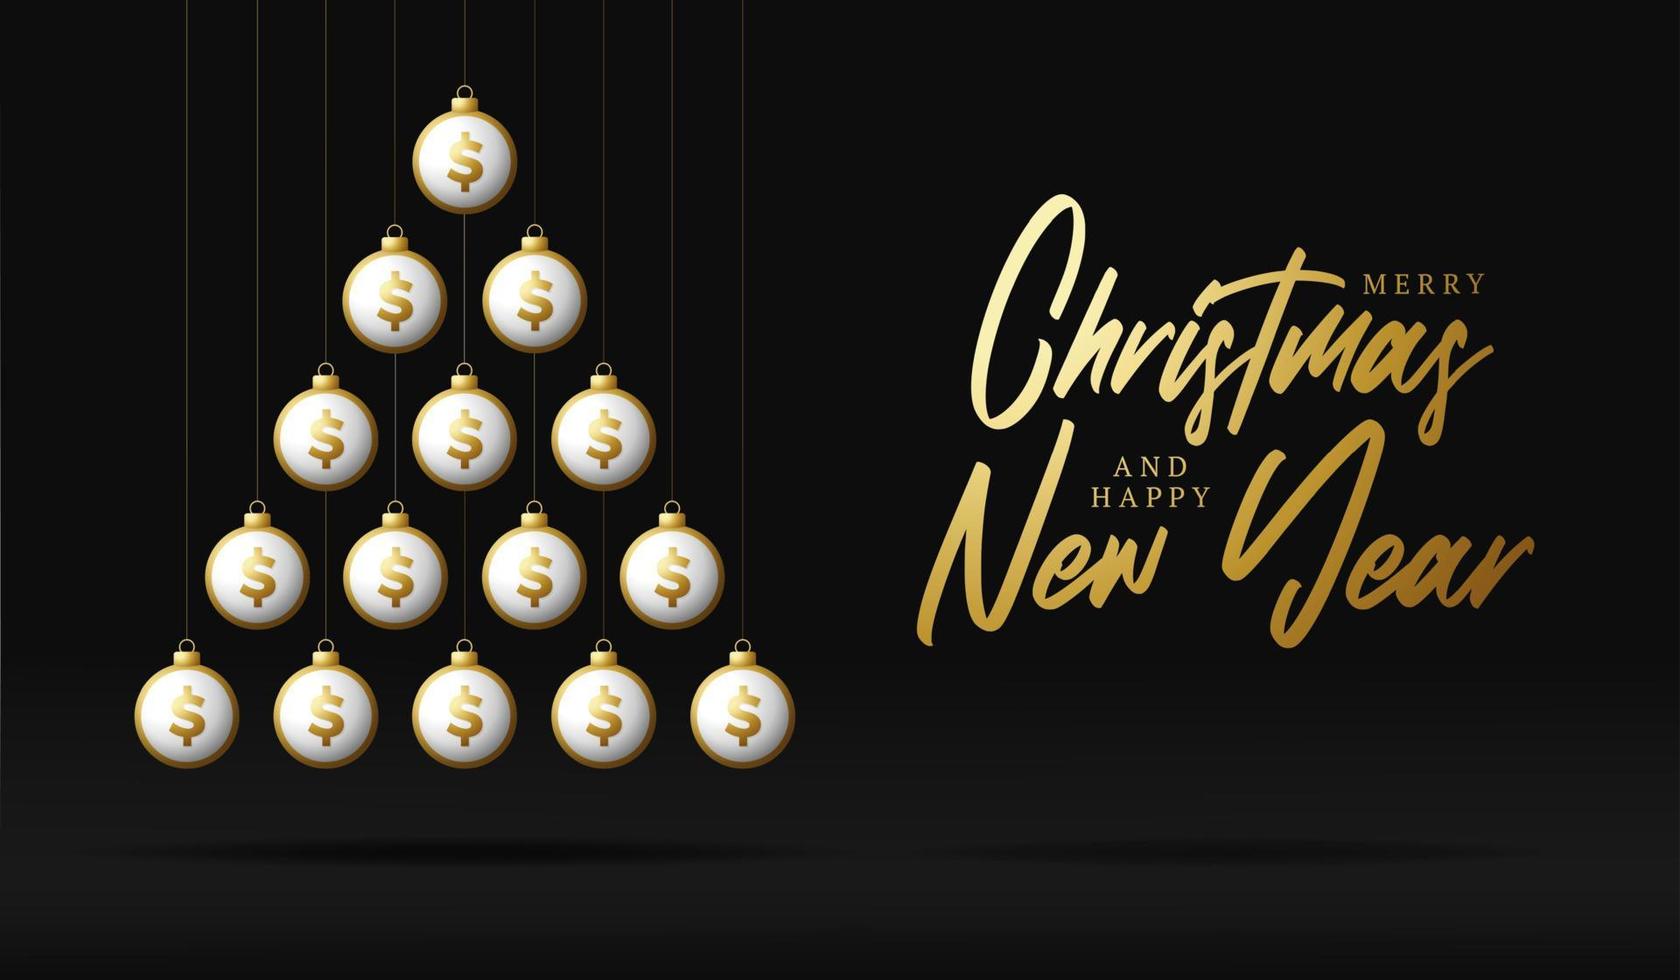 carte de voeux de noël et nouvel an. arbre de Noël créatif fait par des boules de dollar d'argent brillant sur fond noir pour noël et nouvel an illustration vectorielle vecteur